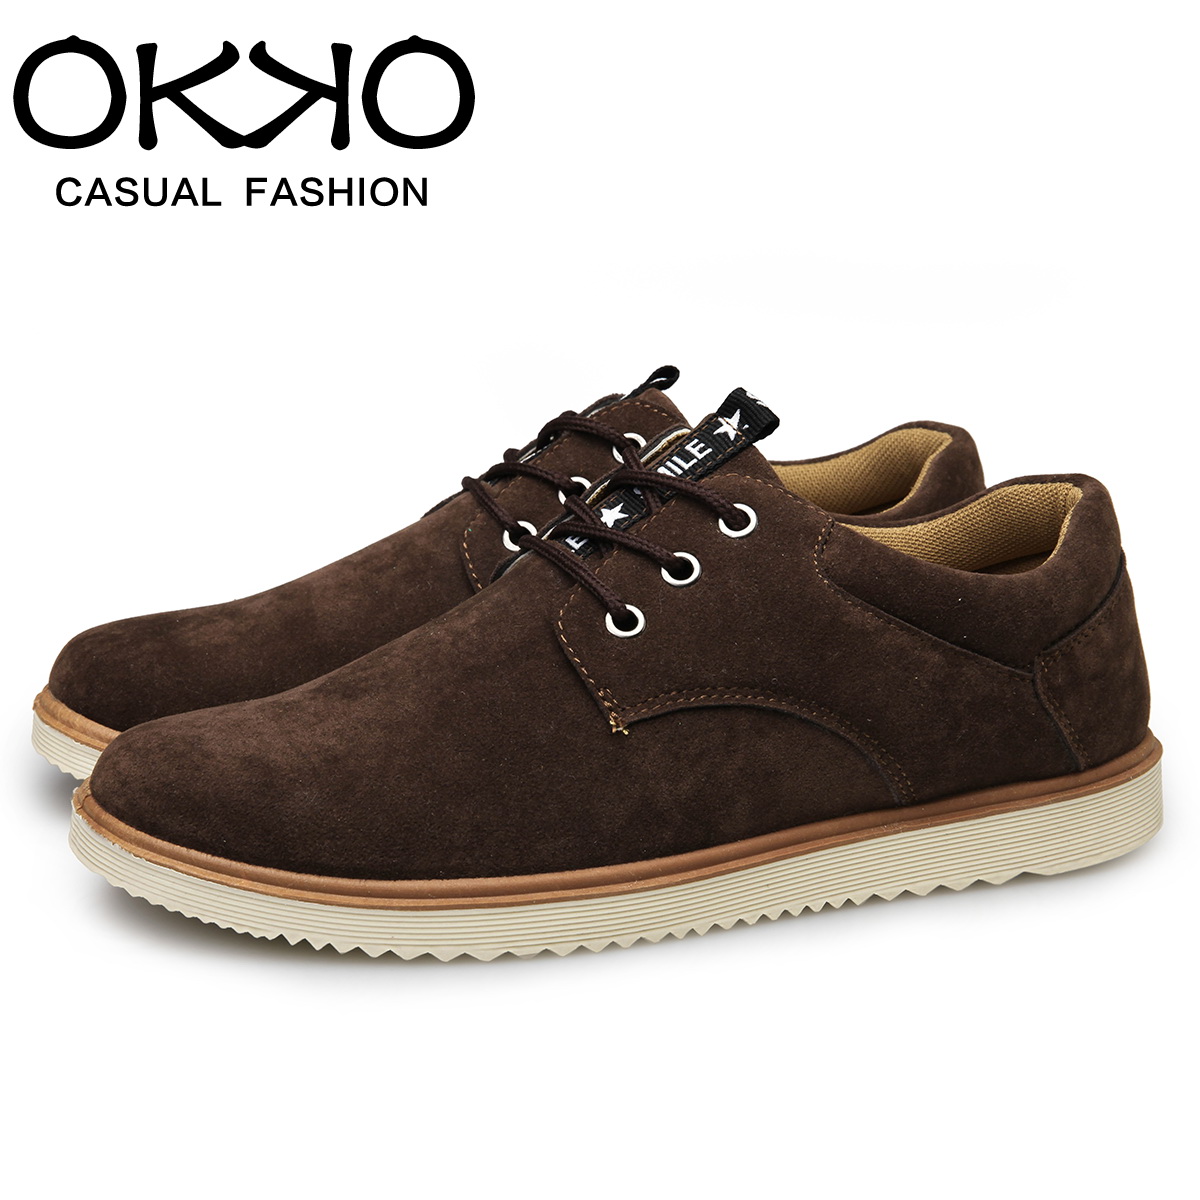 OKKO冬季新款男士休闲鞋英伦时尚皮鞋男板鞋低帮鞋潮流鞋子布鞋折扣优惠信息